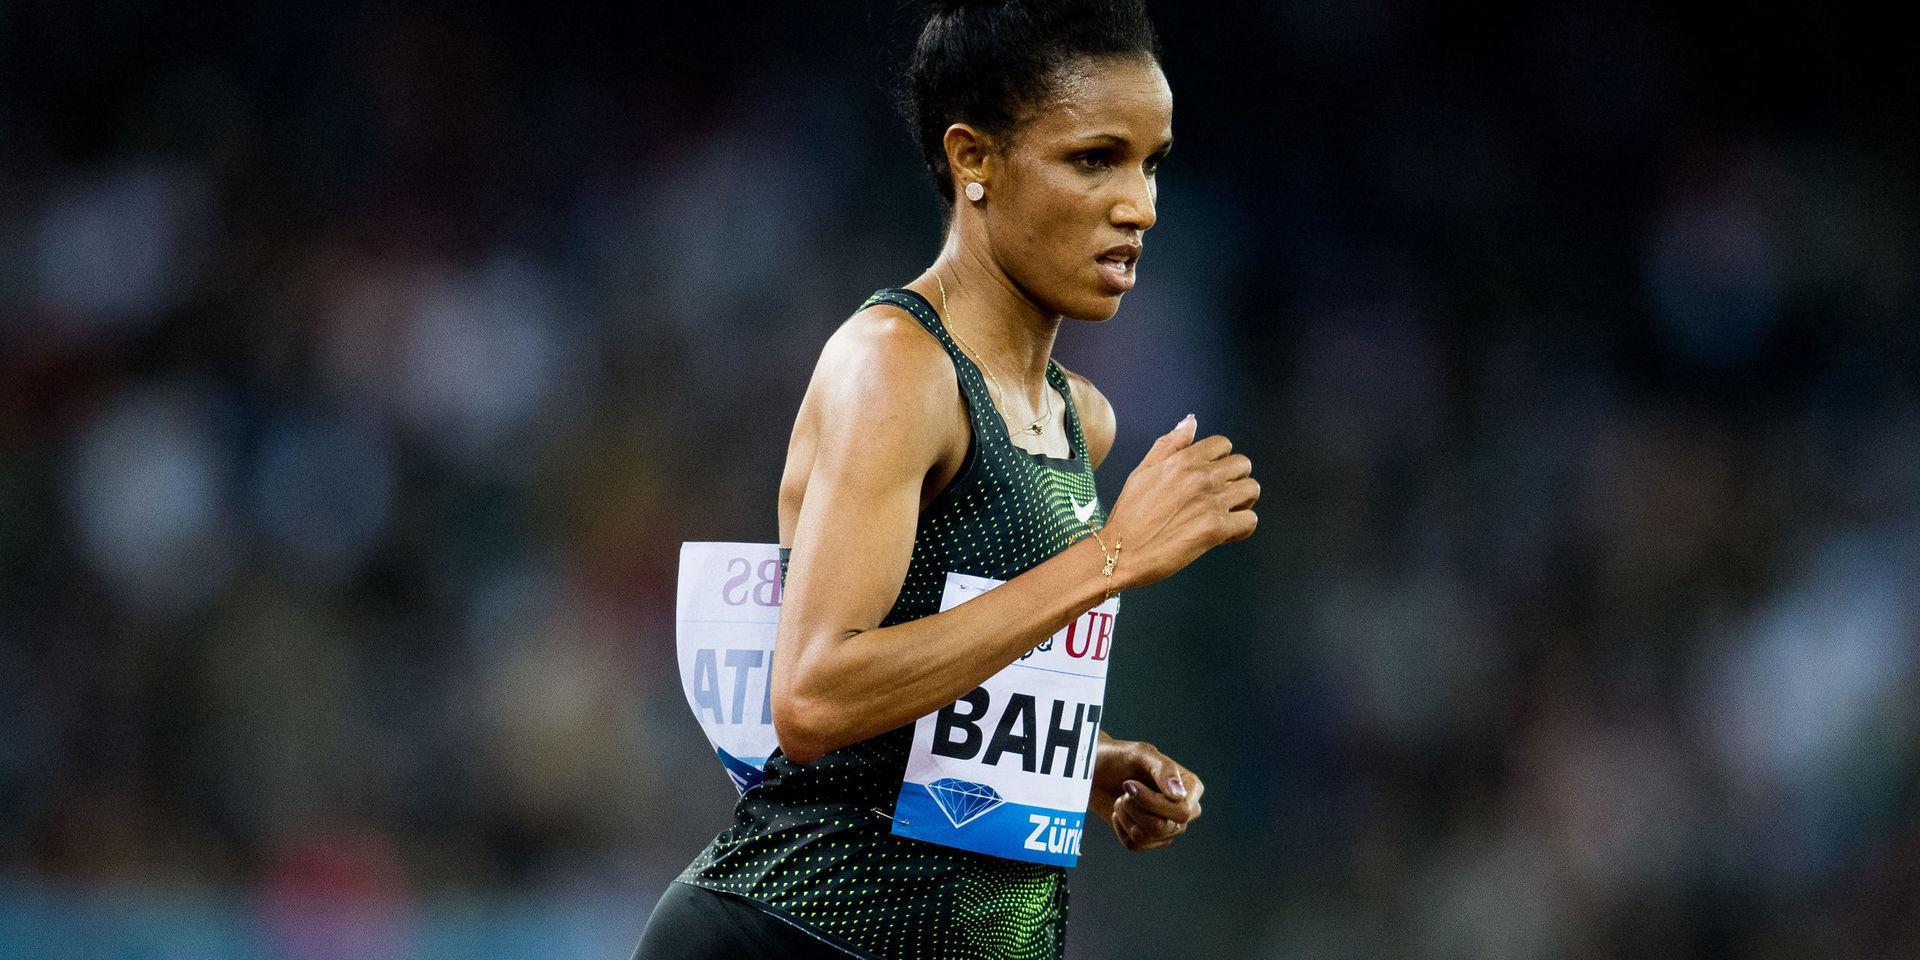 Meraf Bahta var tillbaka på distansen 5 000 meter under Diamond league-galan i Zürich.